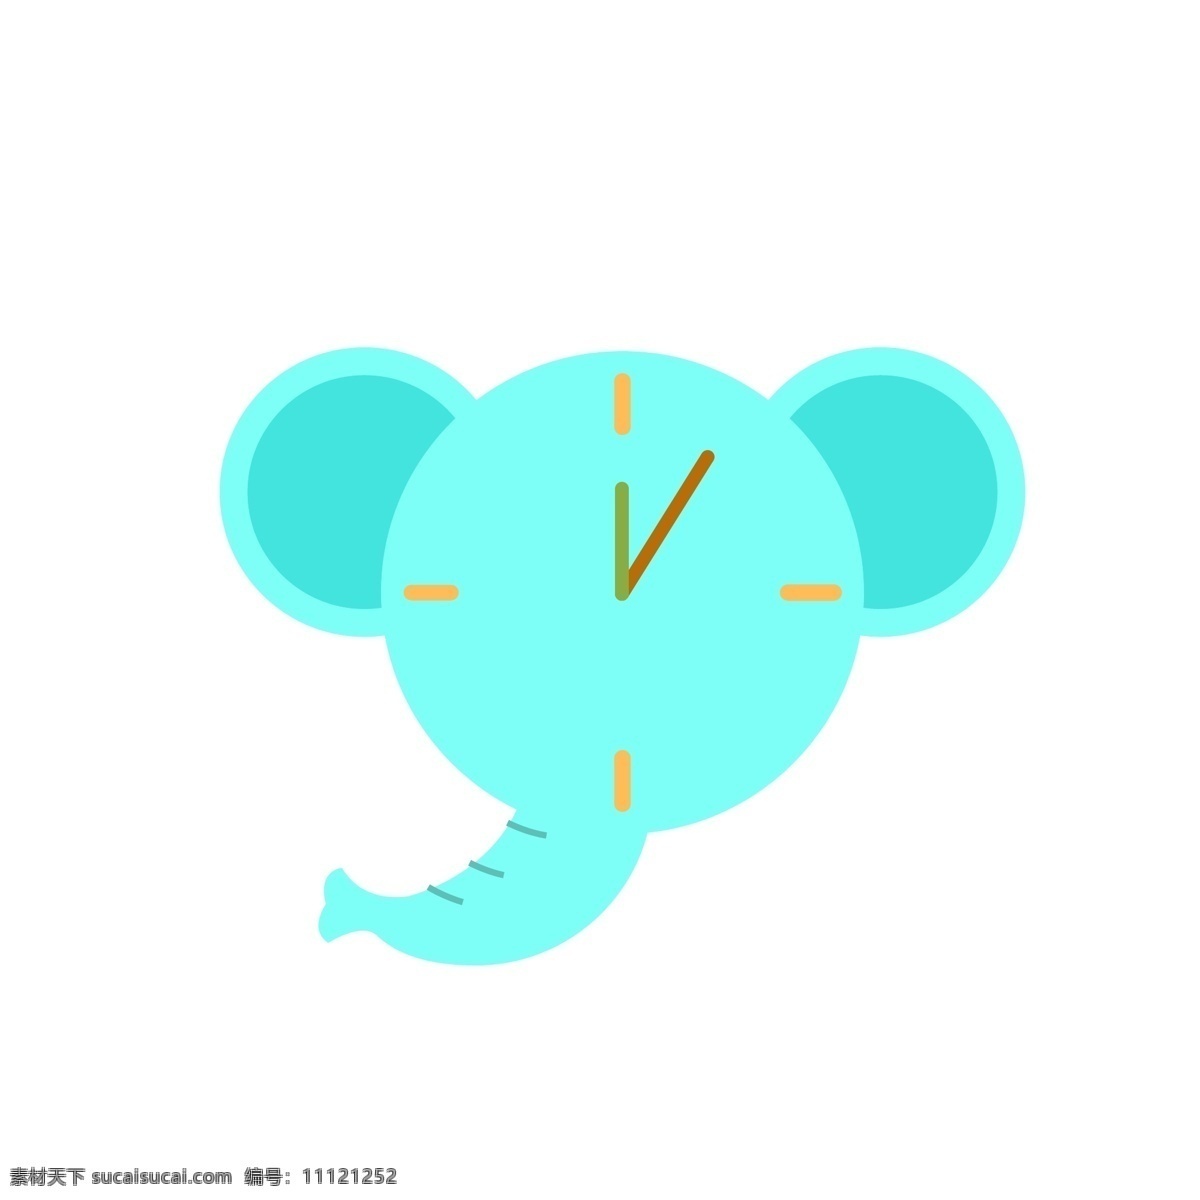 大象 时钟 矢量 元素 卡通时钟 时间管理指针 漫画时钟 蓝色 可爱